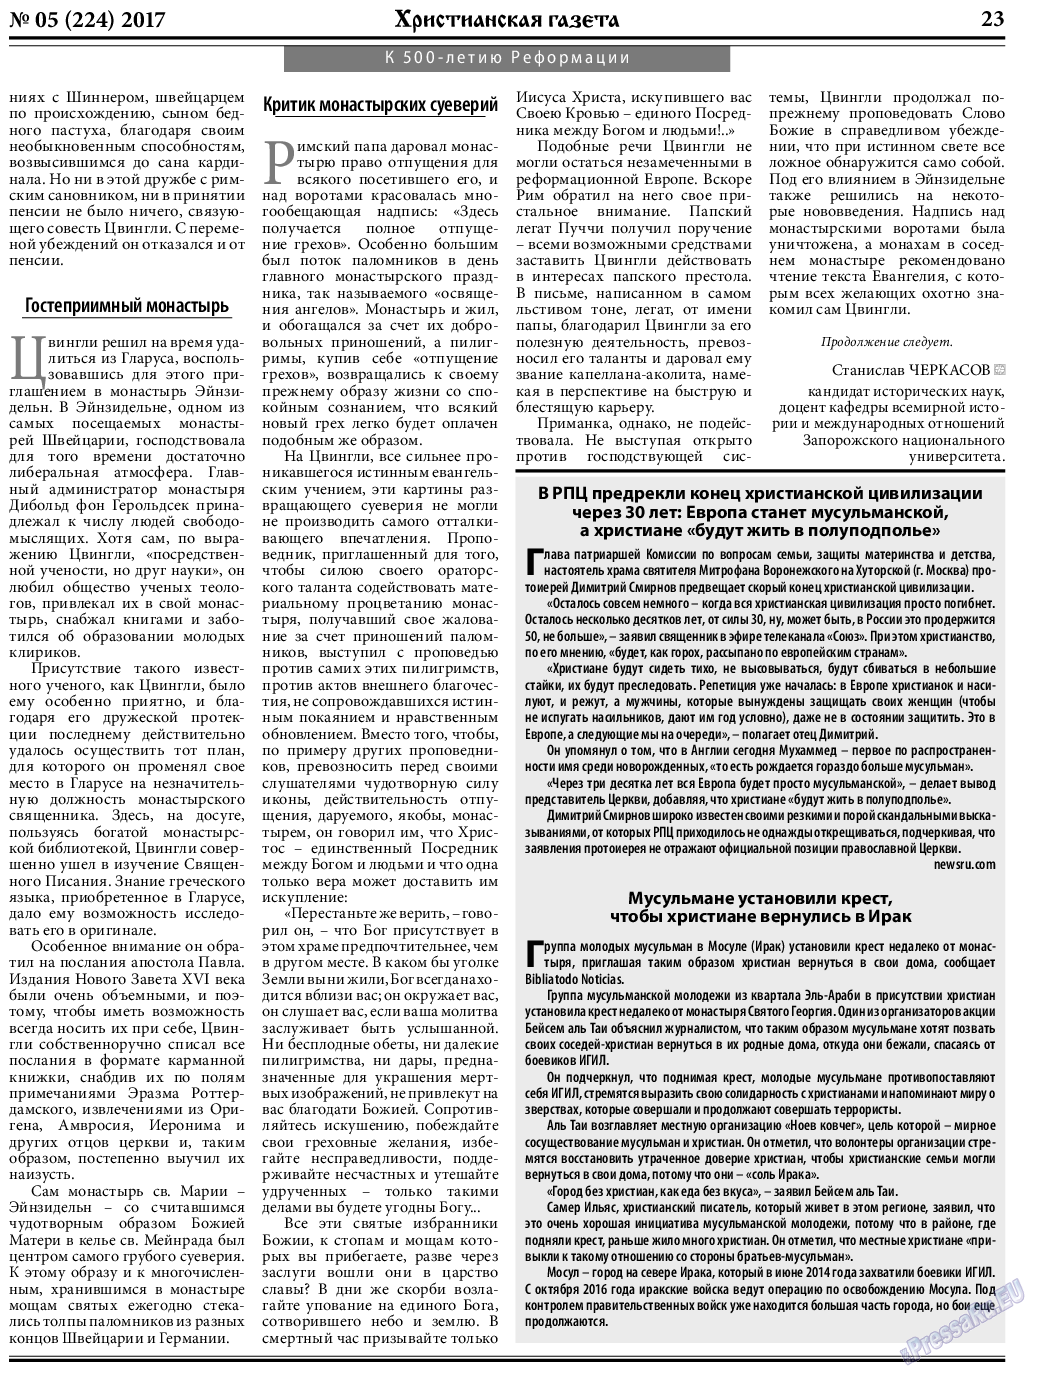 Христианская газета, газета. 2017 №5 стр.23